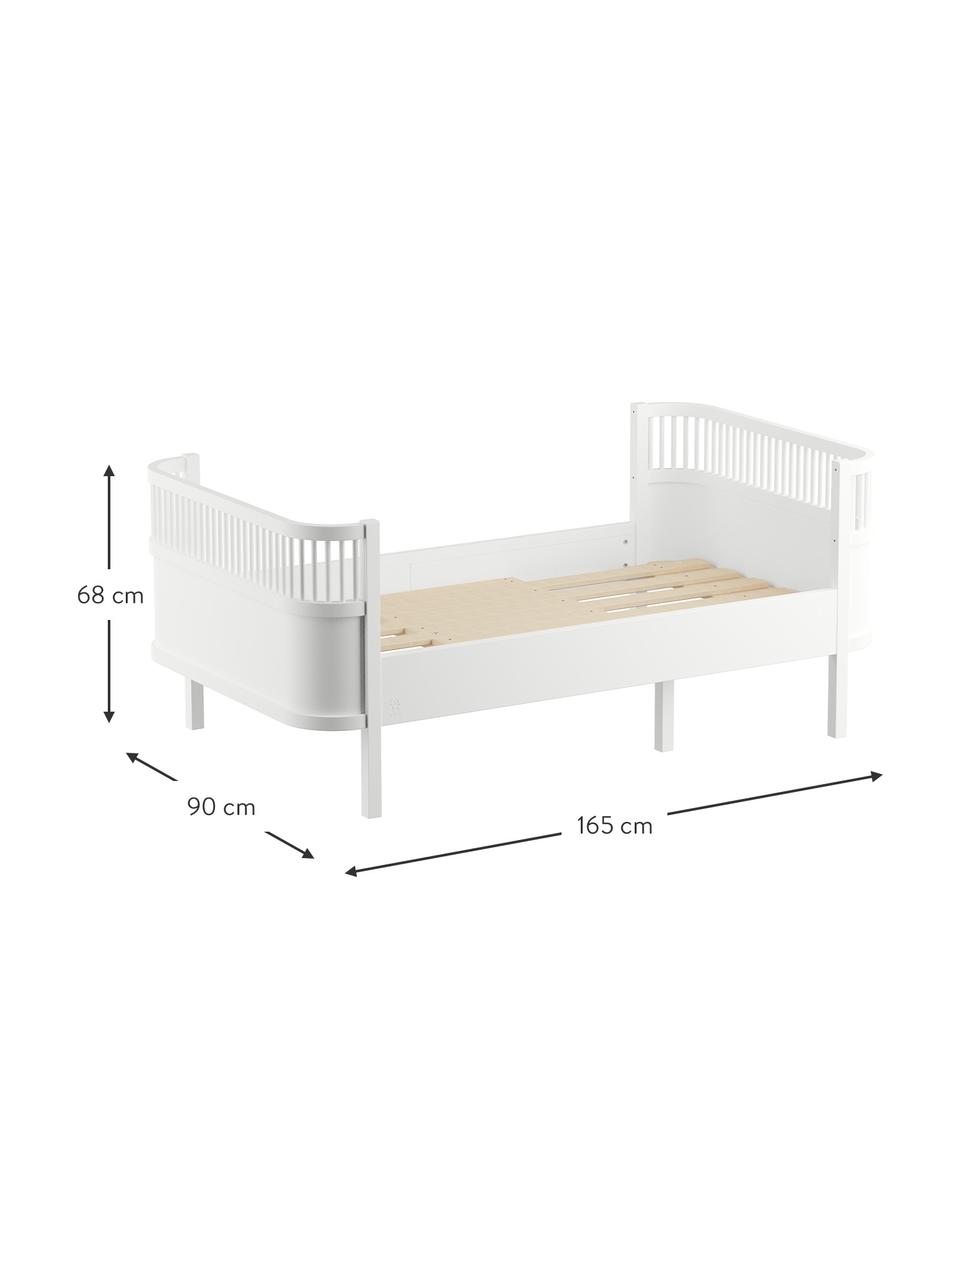 Nastavitelná dřevěná postel Junior Grow, 90 x 165 cm, Lakované březové dřevo,l akované barvou bez obsahu VOC, Bílá, Š 90 cm, D 165 cm